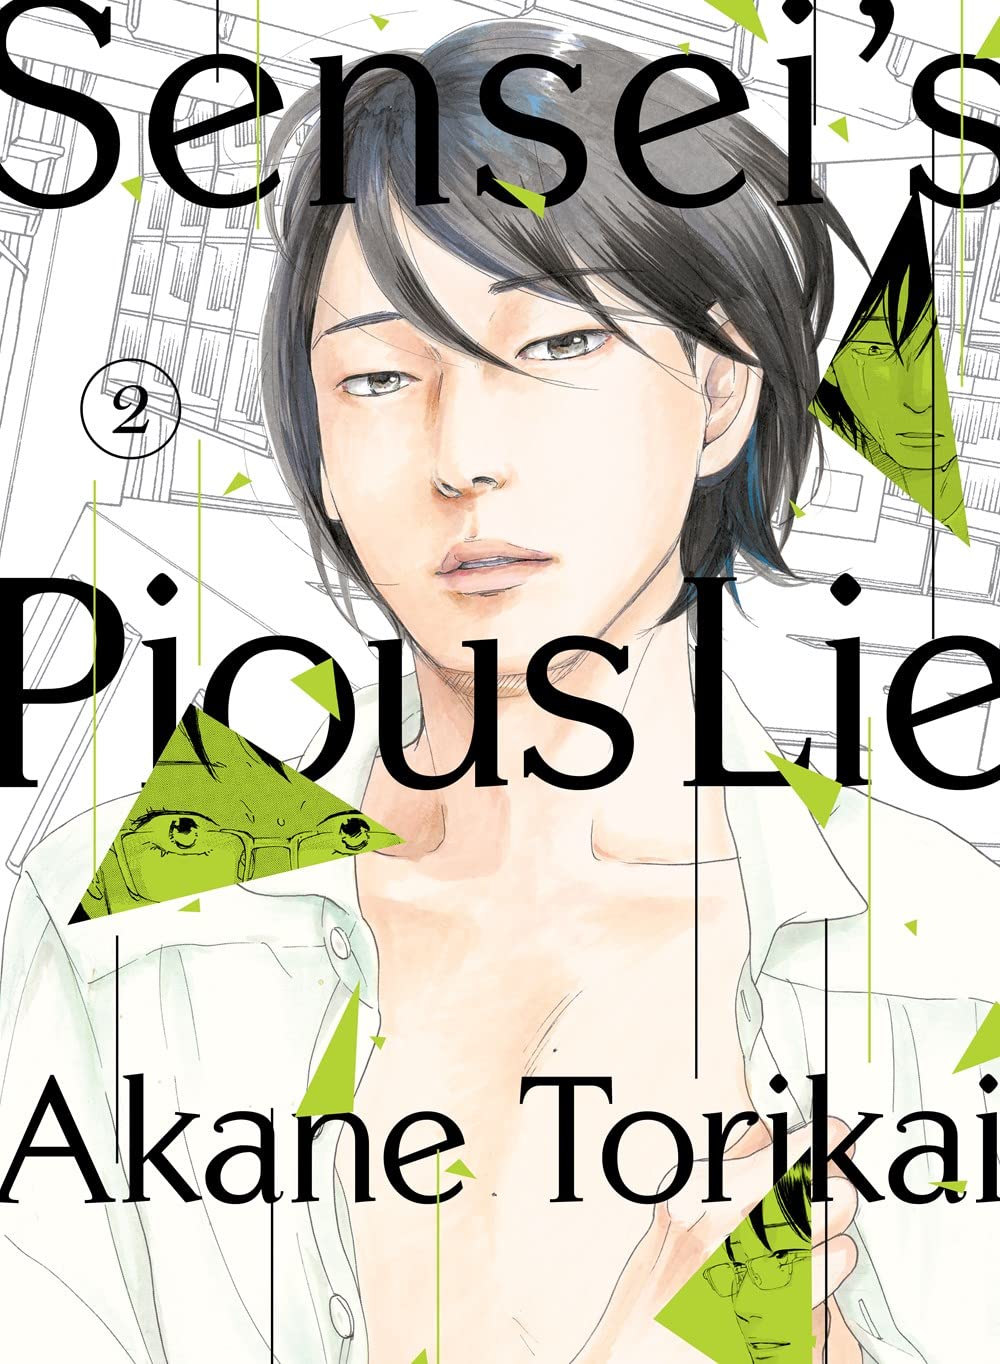 Sensei's Pious Lie Manga Volume 2 (Mature)